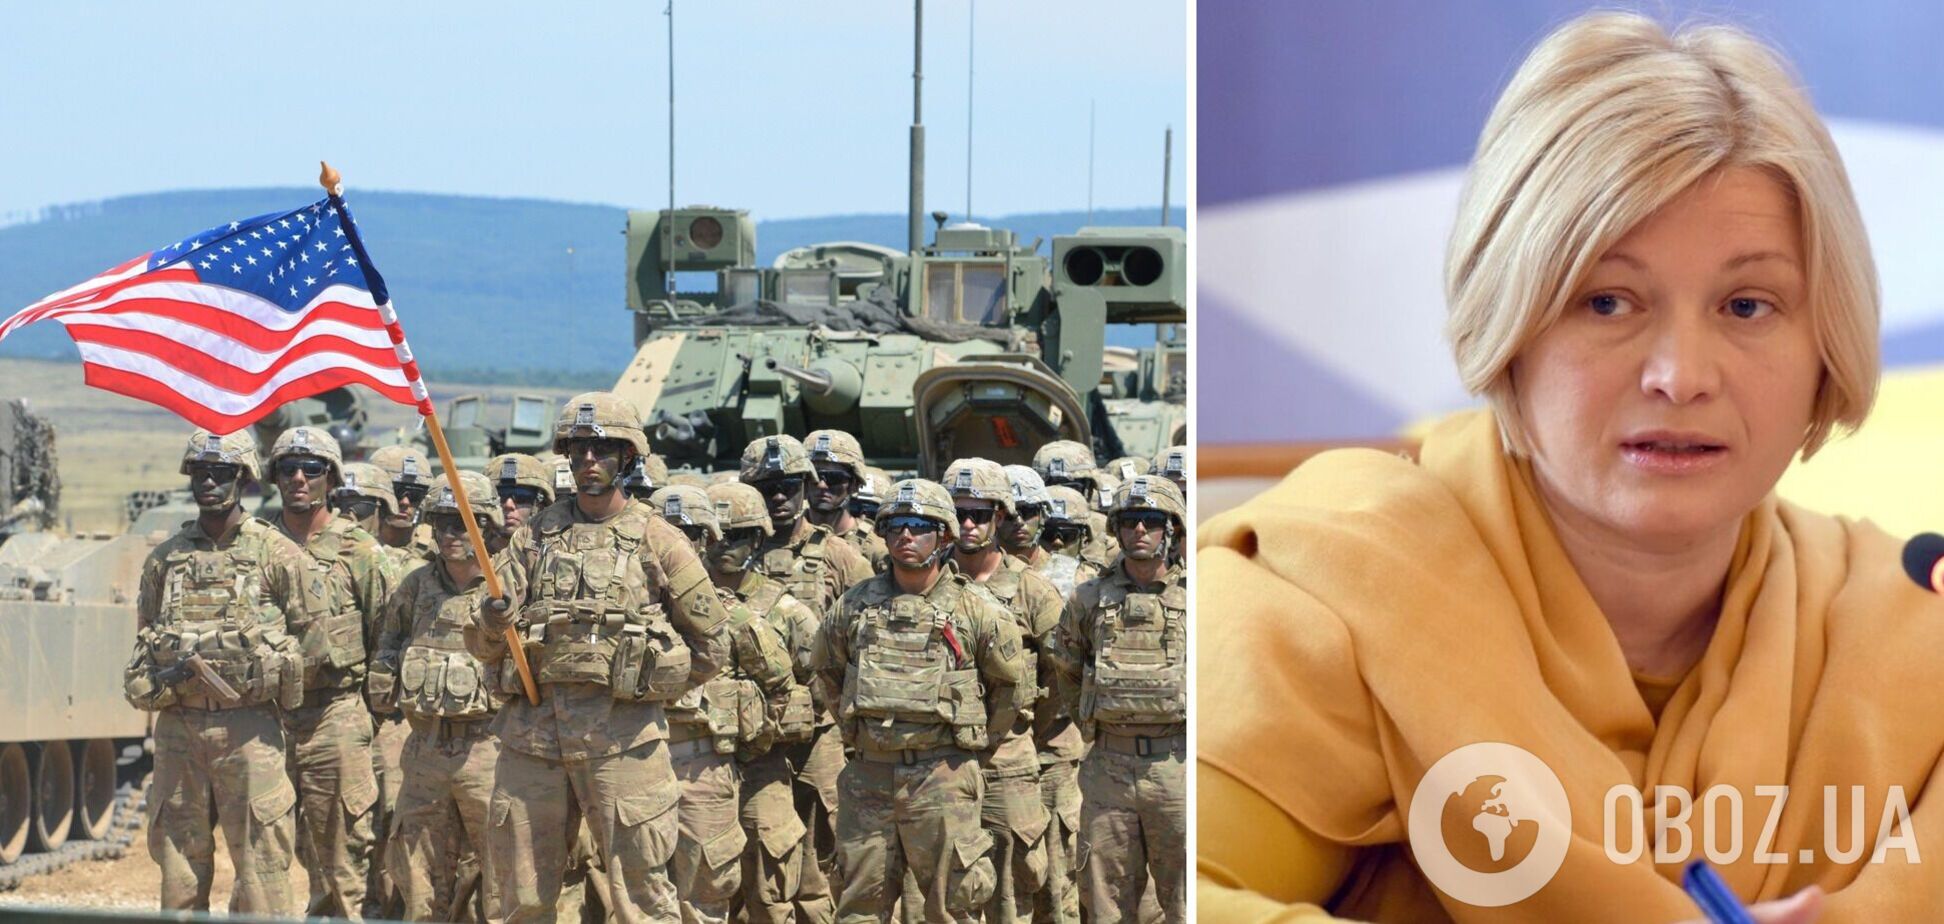 Воевать за Украину будет только Украина: Геращенко объяснила позицию США по оказанию военной помощи